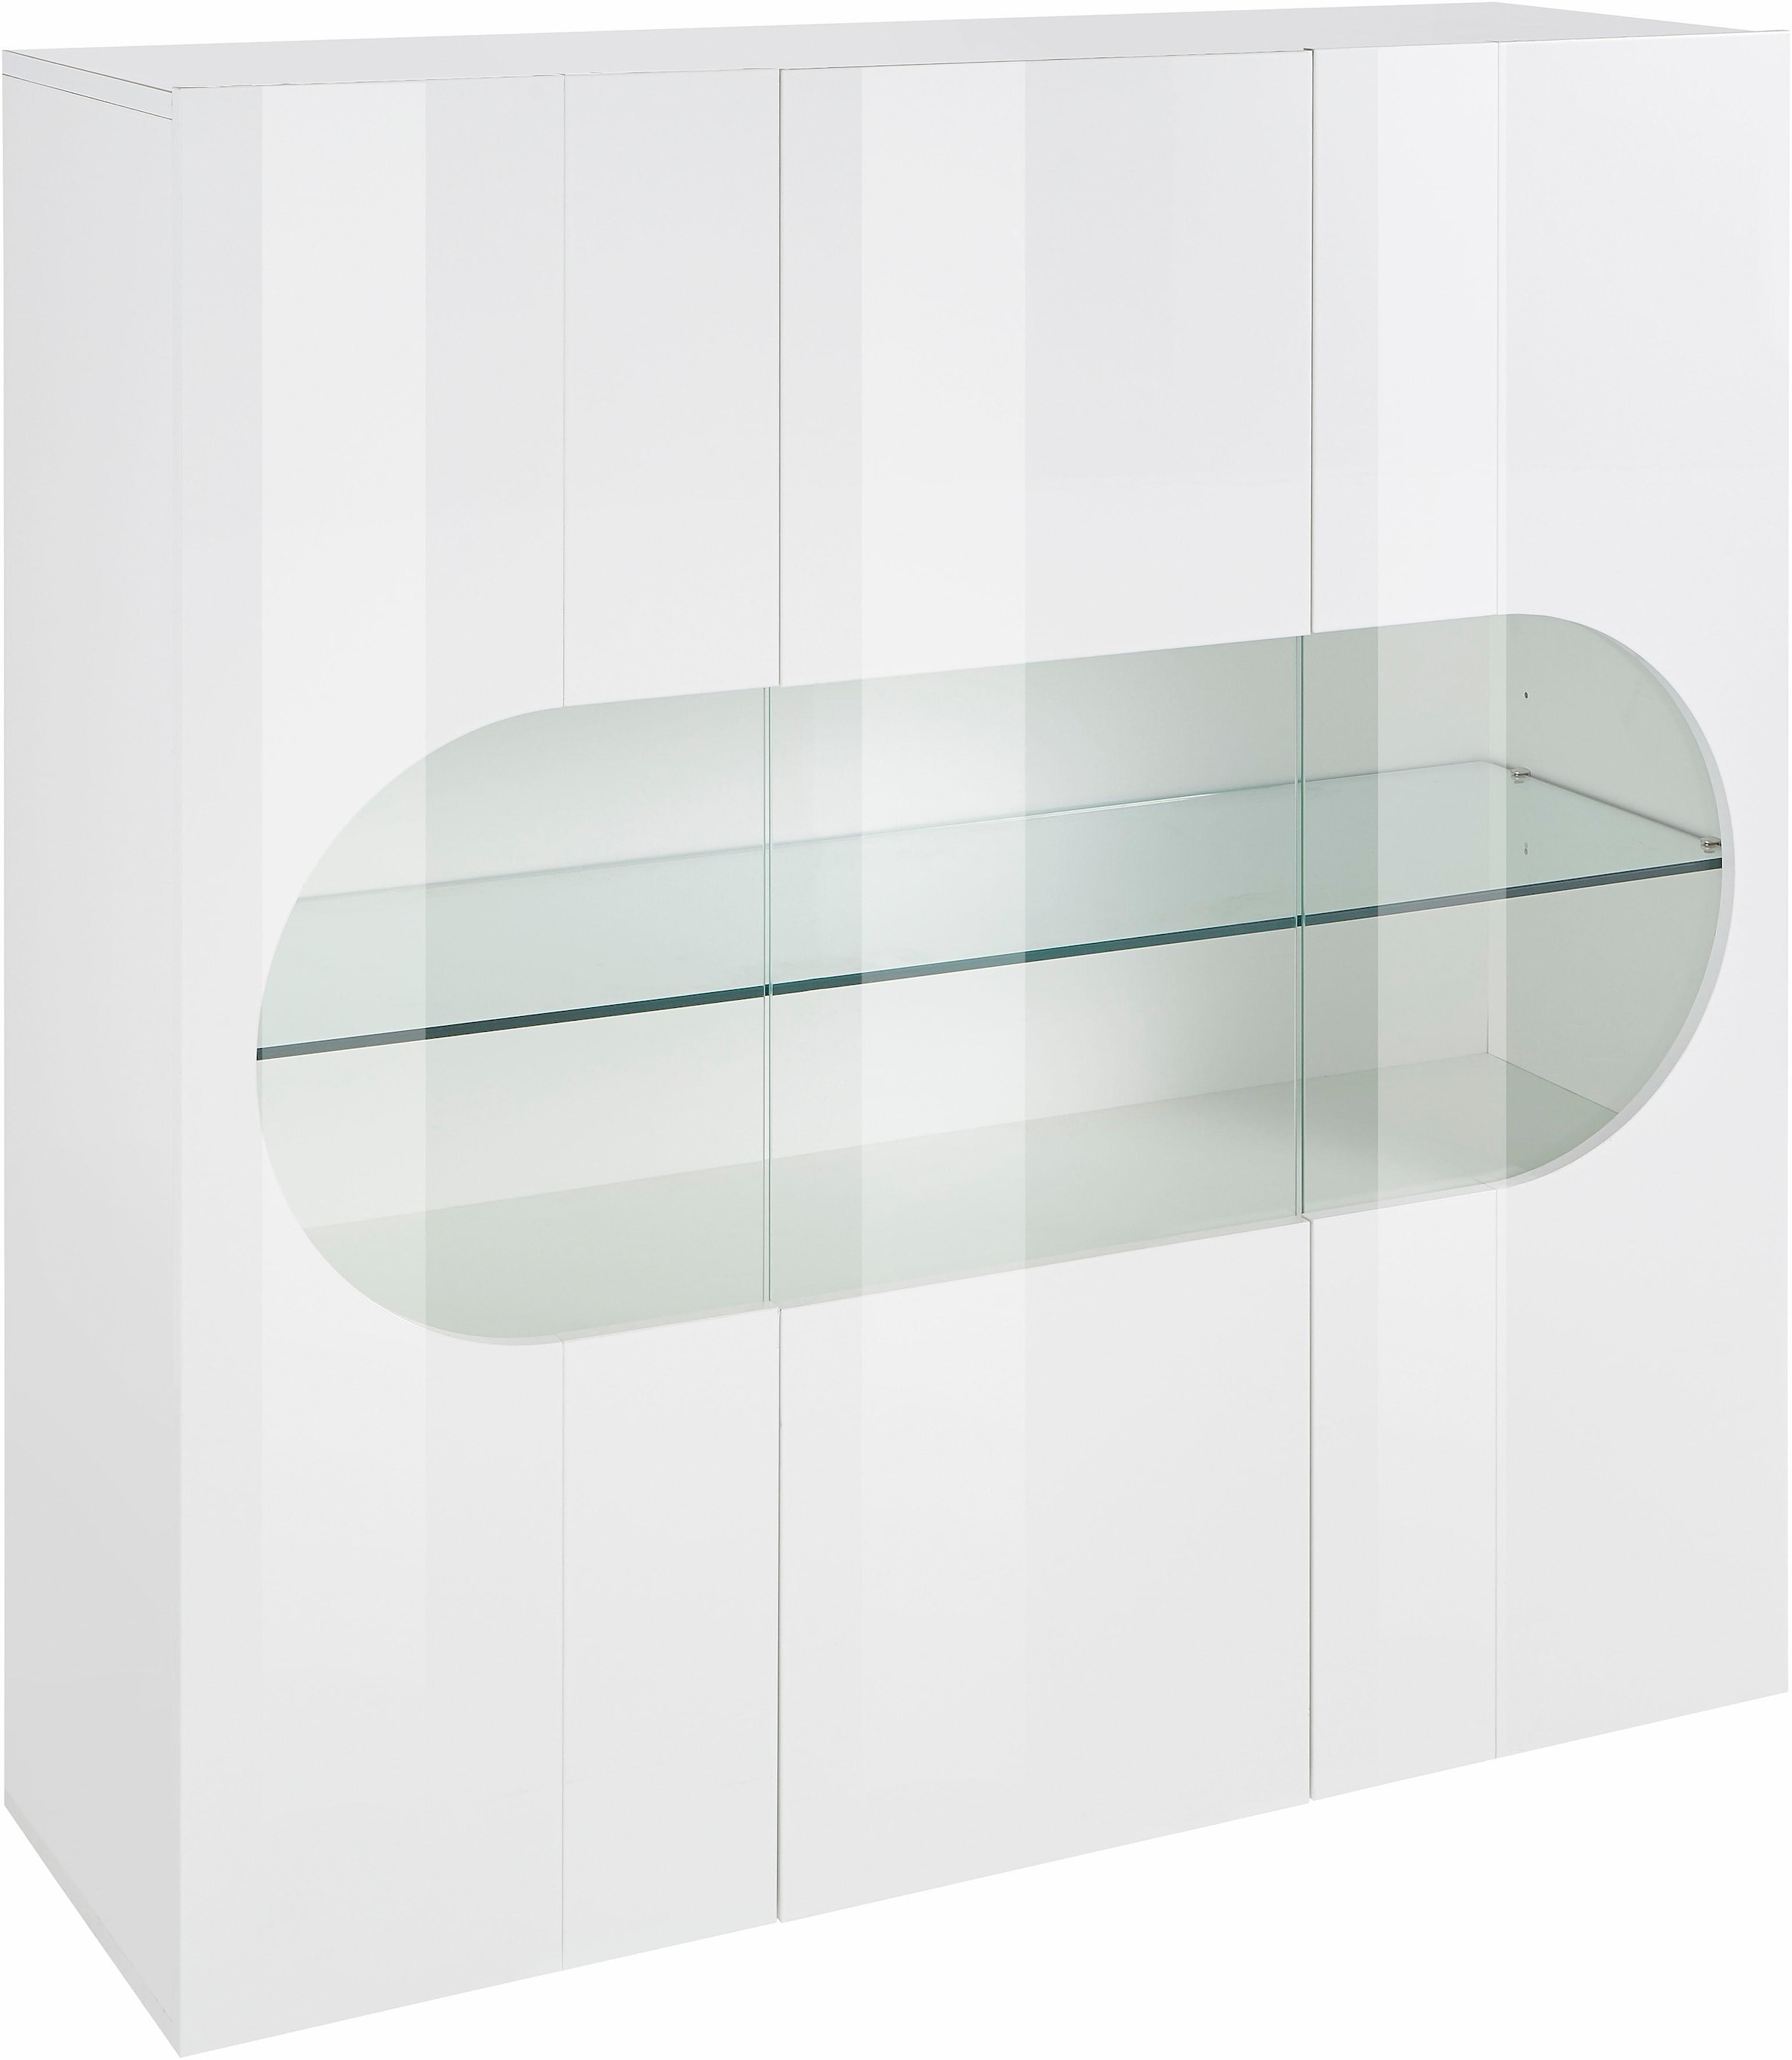 INOSIGN Highboard »Real,Highboard,Kommode,Schrank mit 3 Türen,komplett hochglanz lackiert«, mit 3 Türen, davon 2 aus Glas, mit einer großen Glasablage im Inneren